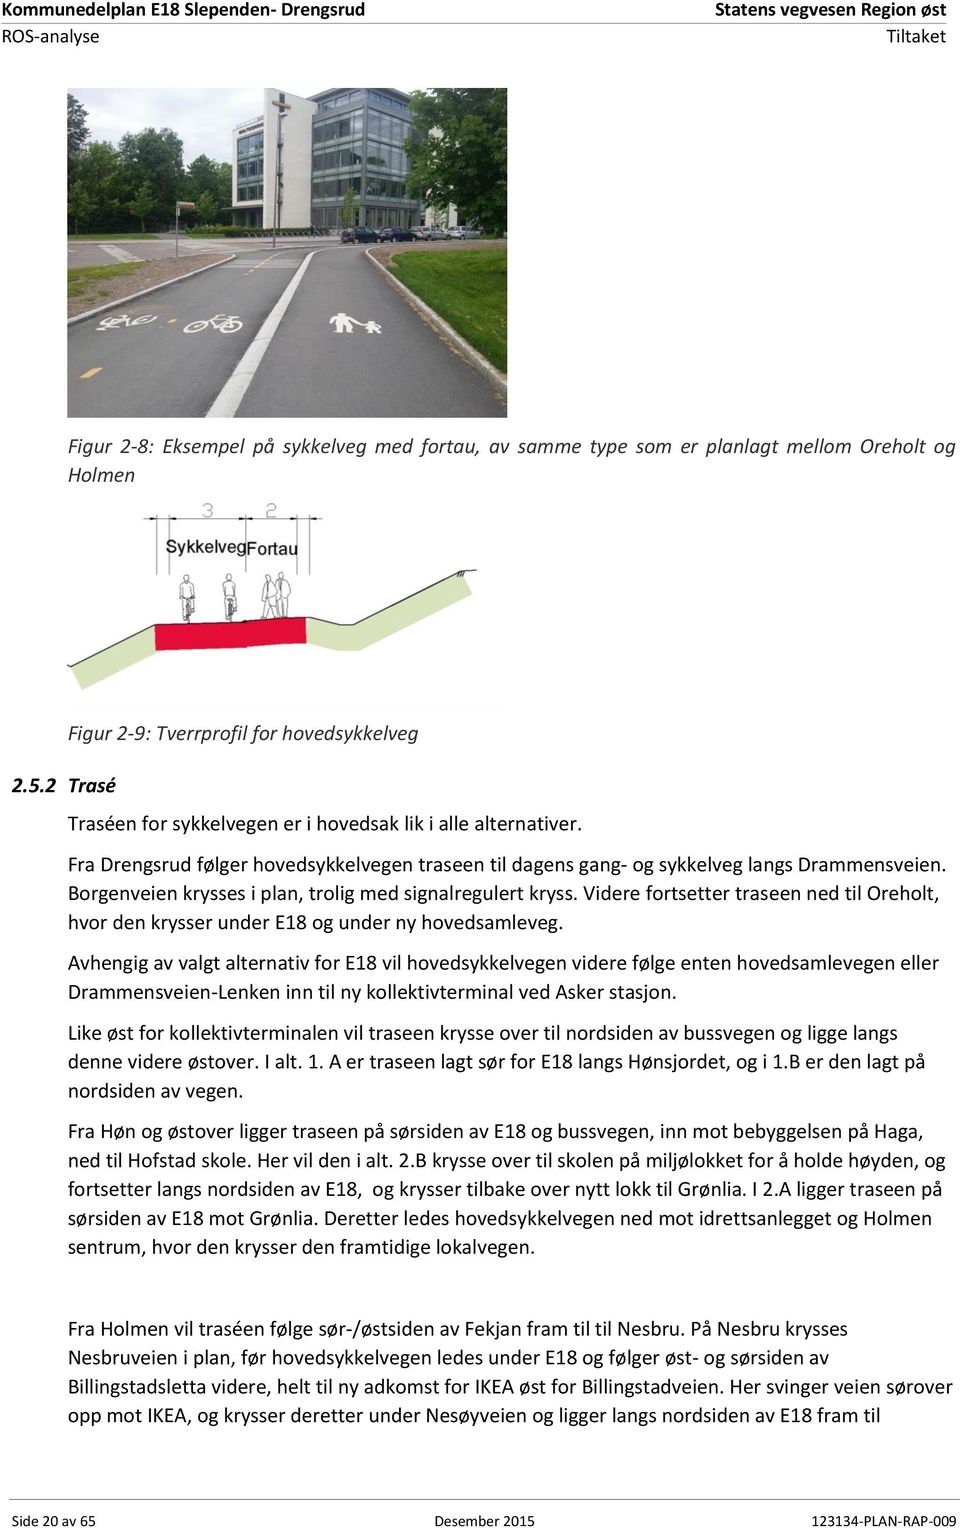 Fra Drengsrud følger hovedsykkelvegen traseen til dagens gang- og sykkelveg langs Drammensveien. Borgenveien krysses i plan, trolig med signalregulert kryss.